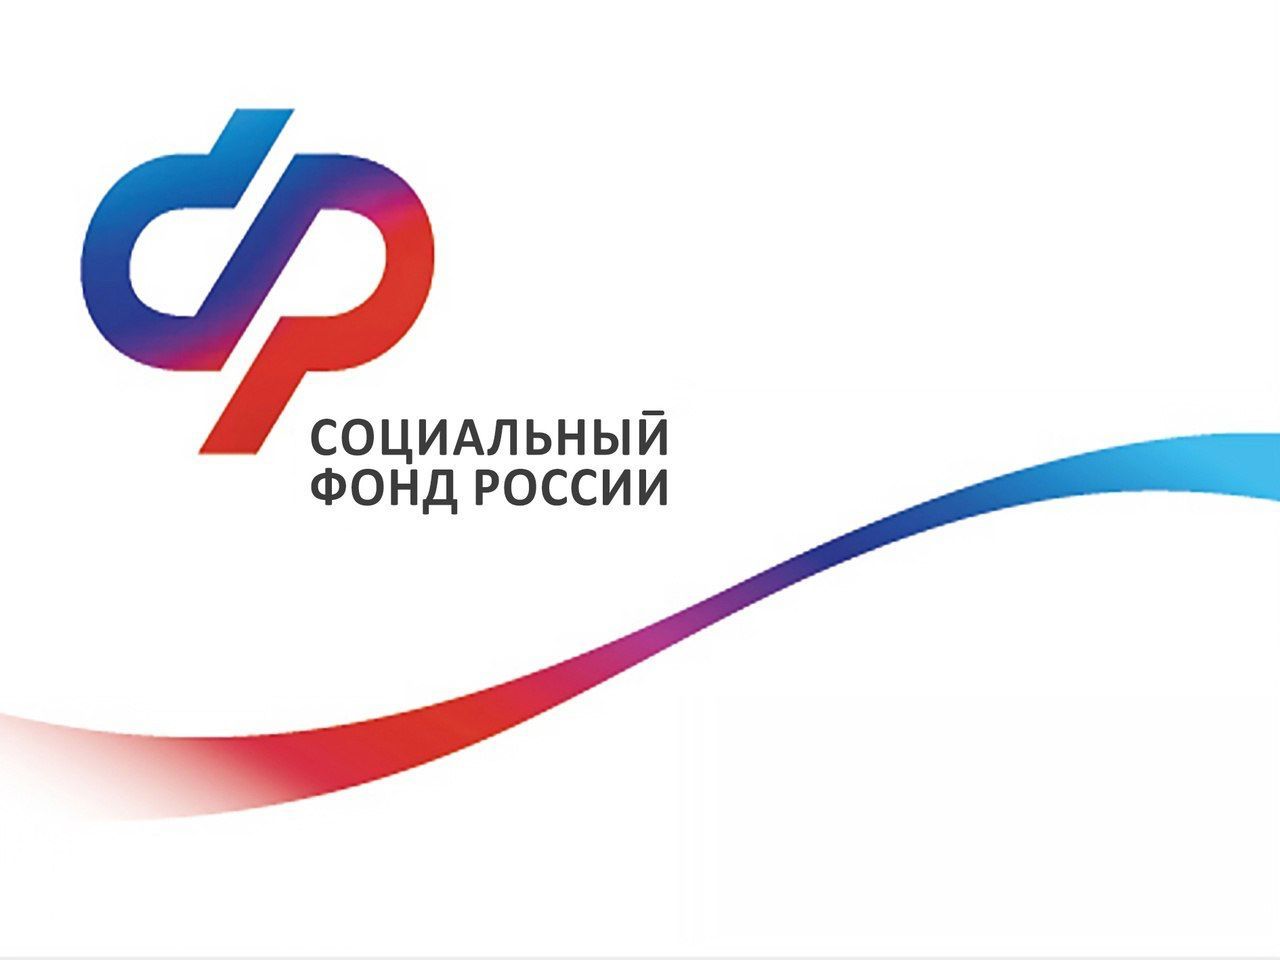 Тысячи томичей с января начали получать повышенные выплаты Социального фонда России